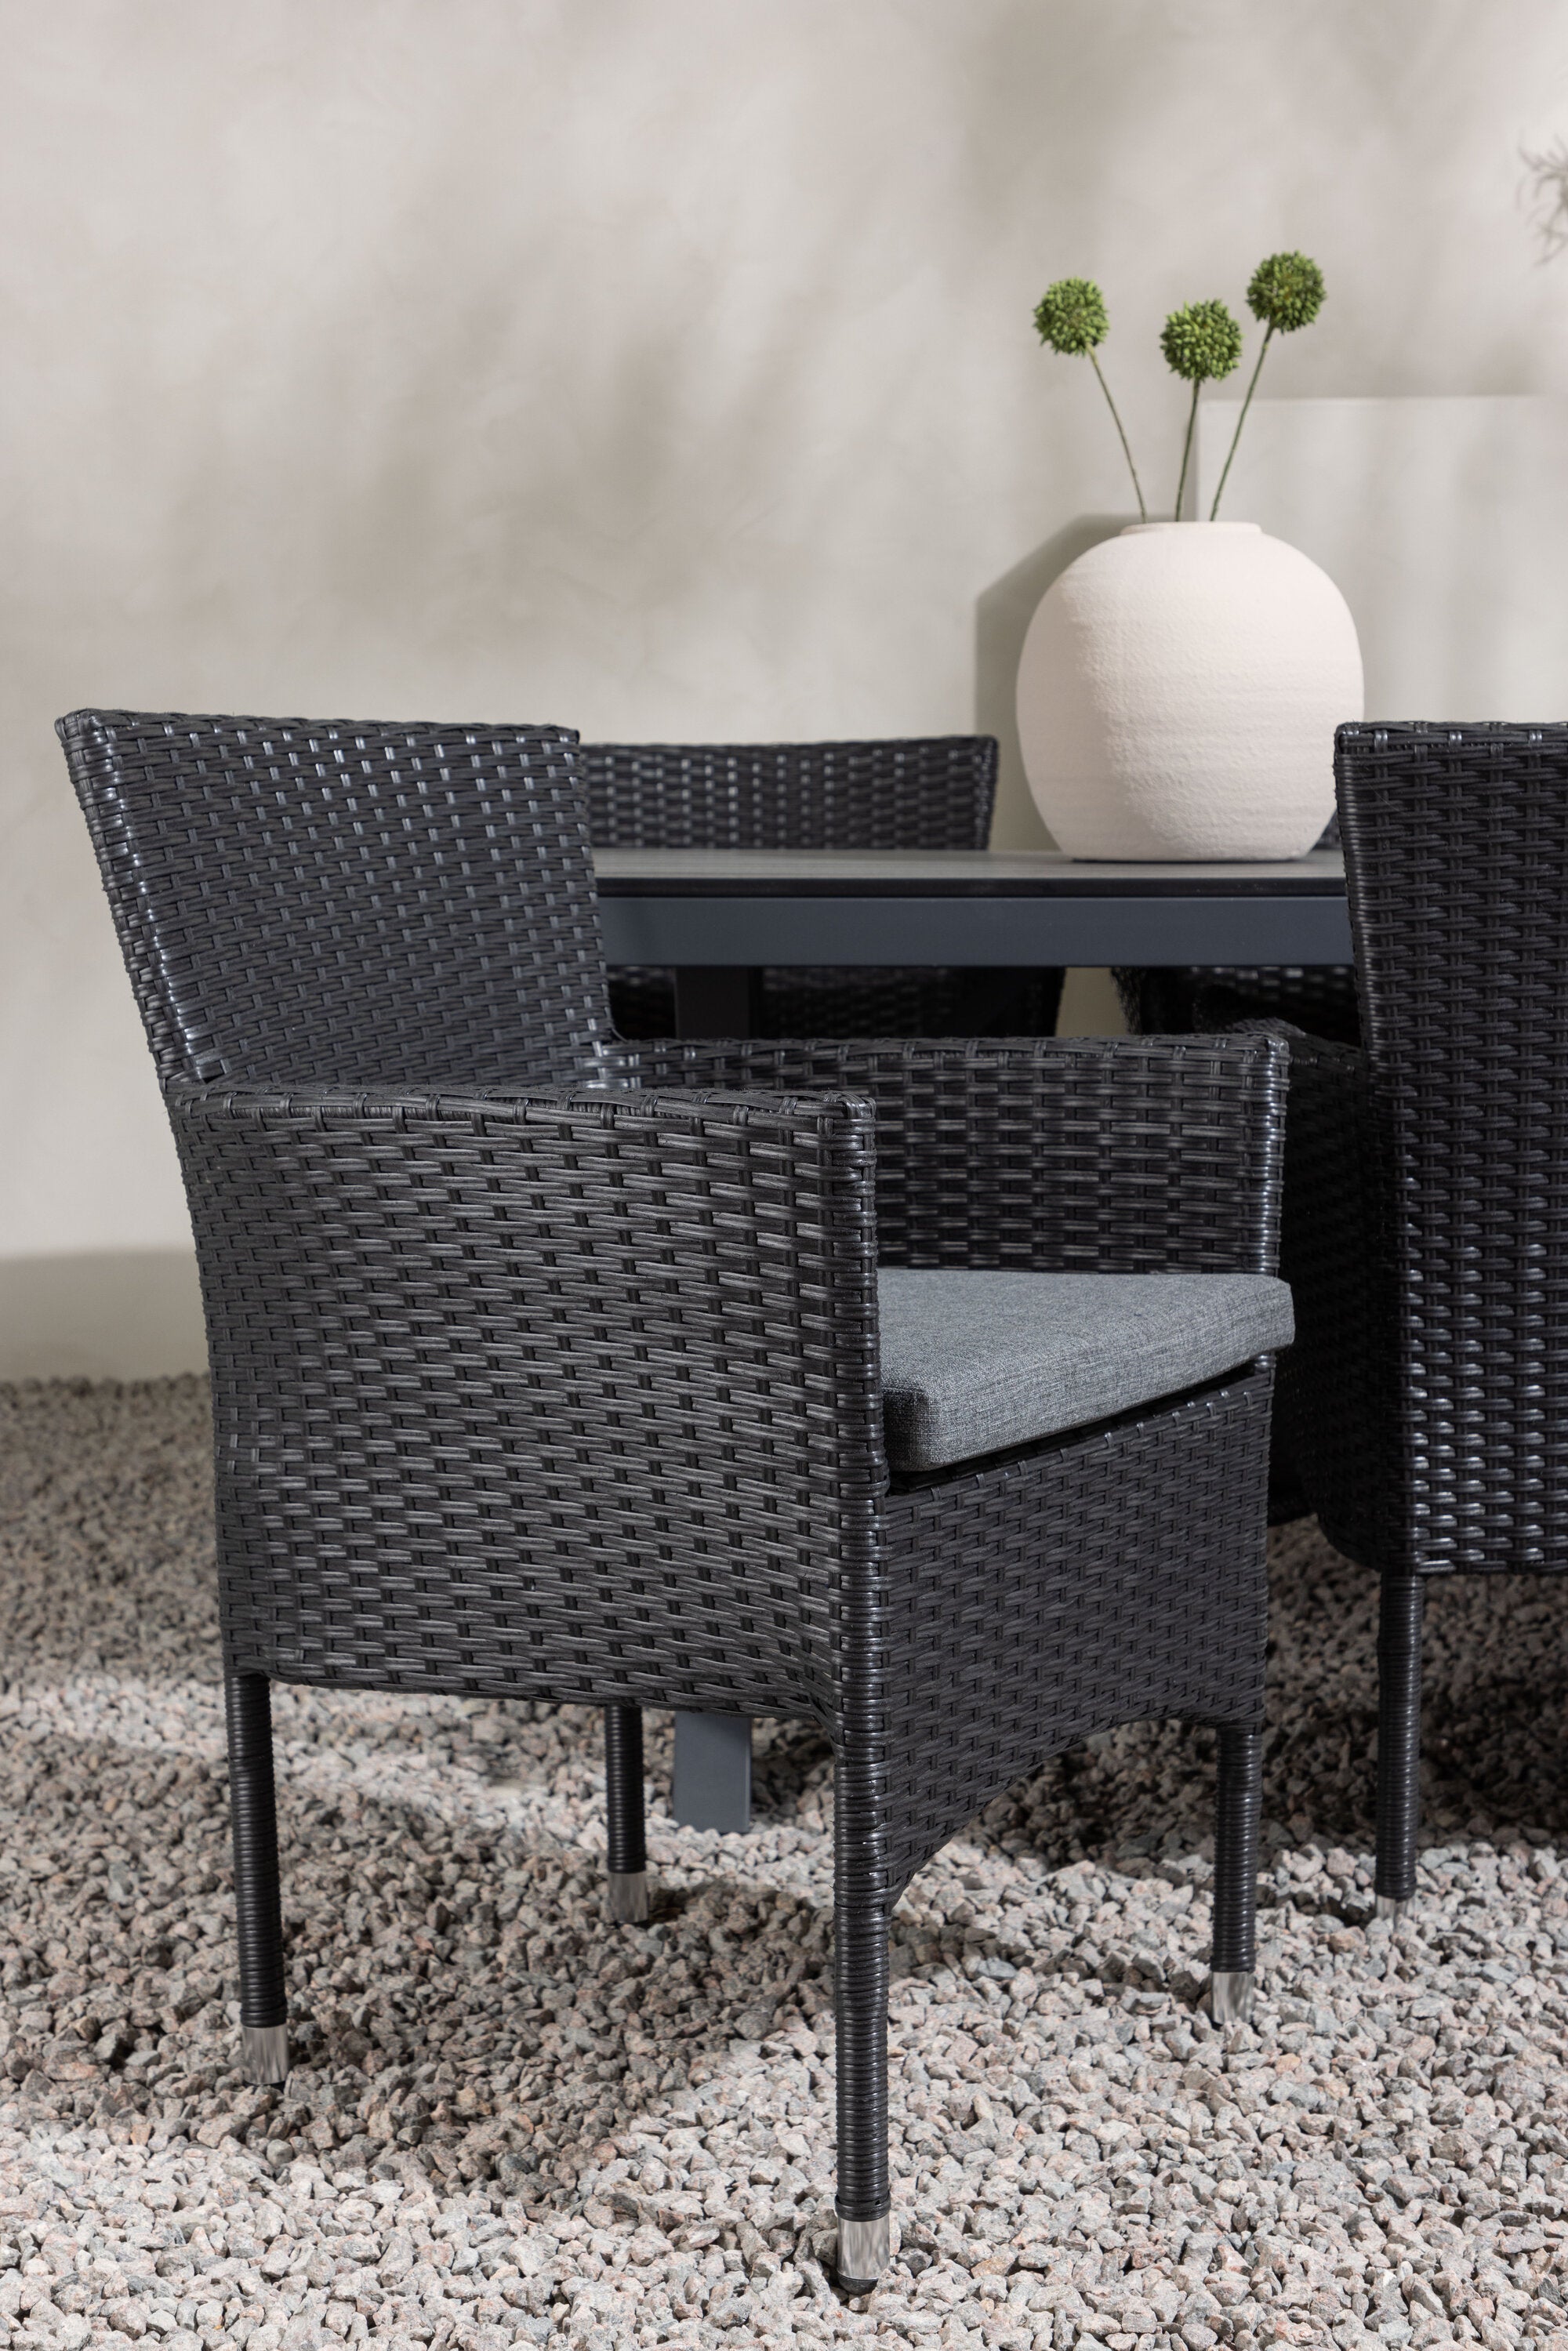 Garcia Outdoor-Tischset + Malina 200cm/6St. in Schwarz präsentiert im Onlineshop von KAQTU Design AG. Gartentischset ist von Venture Home